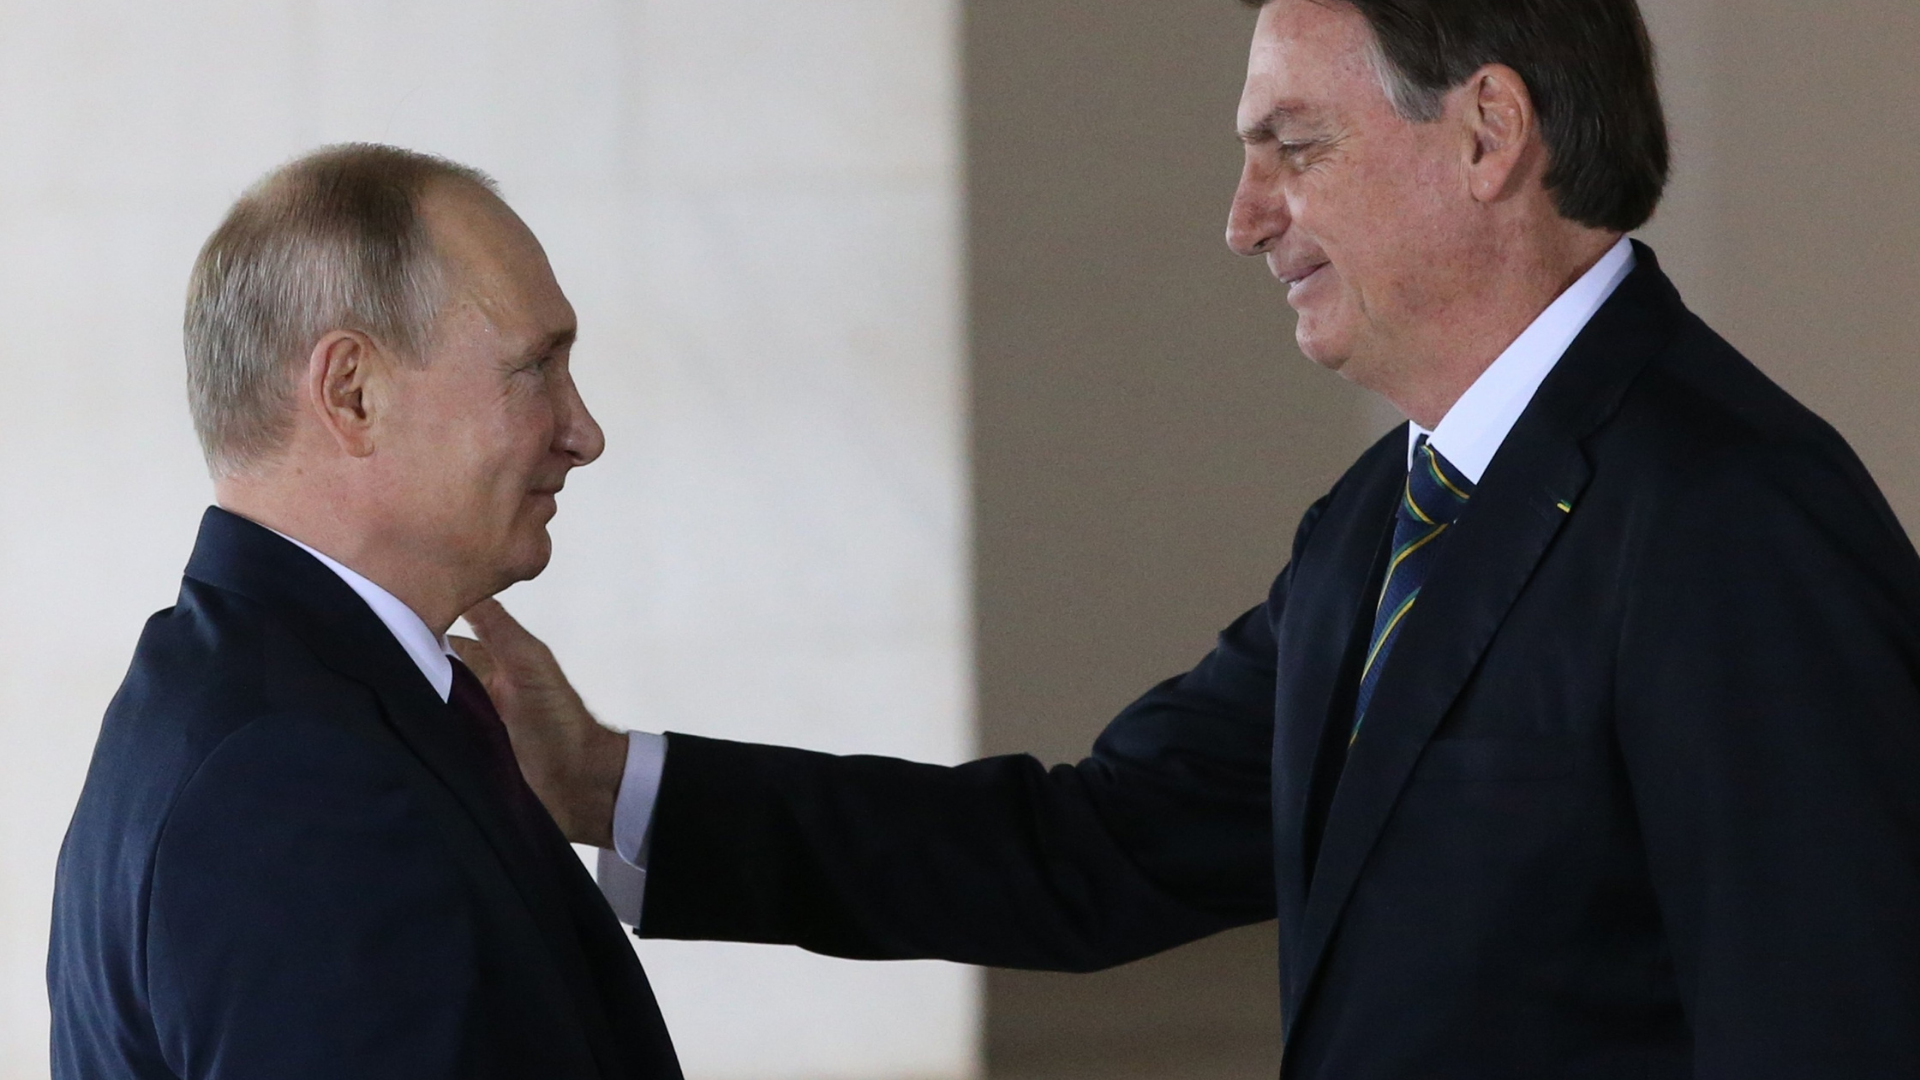 Em meio à guerra, Bolsonaro faz elogio a Putin. Os dois presidentes se olham com expressão simpática.